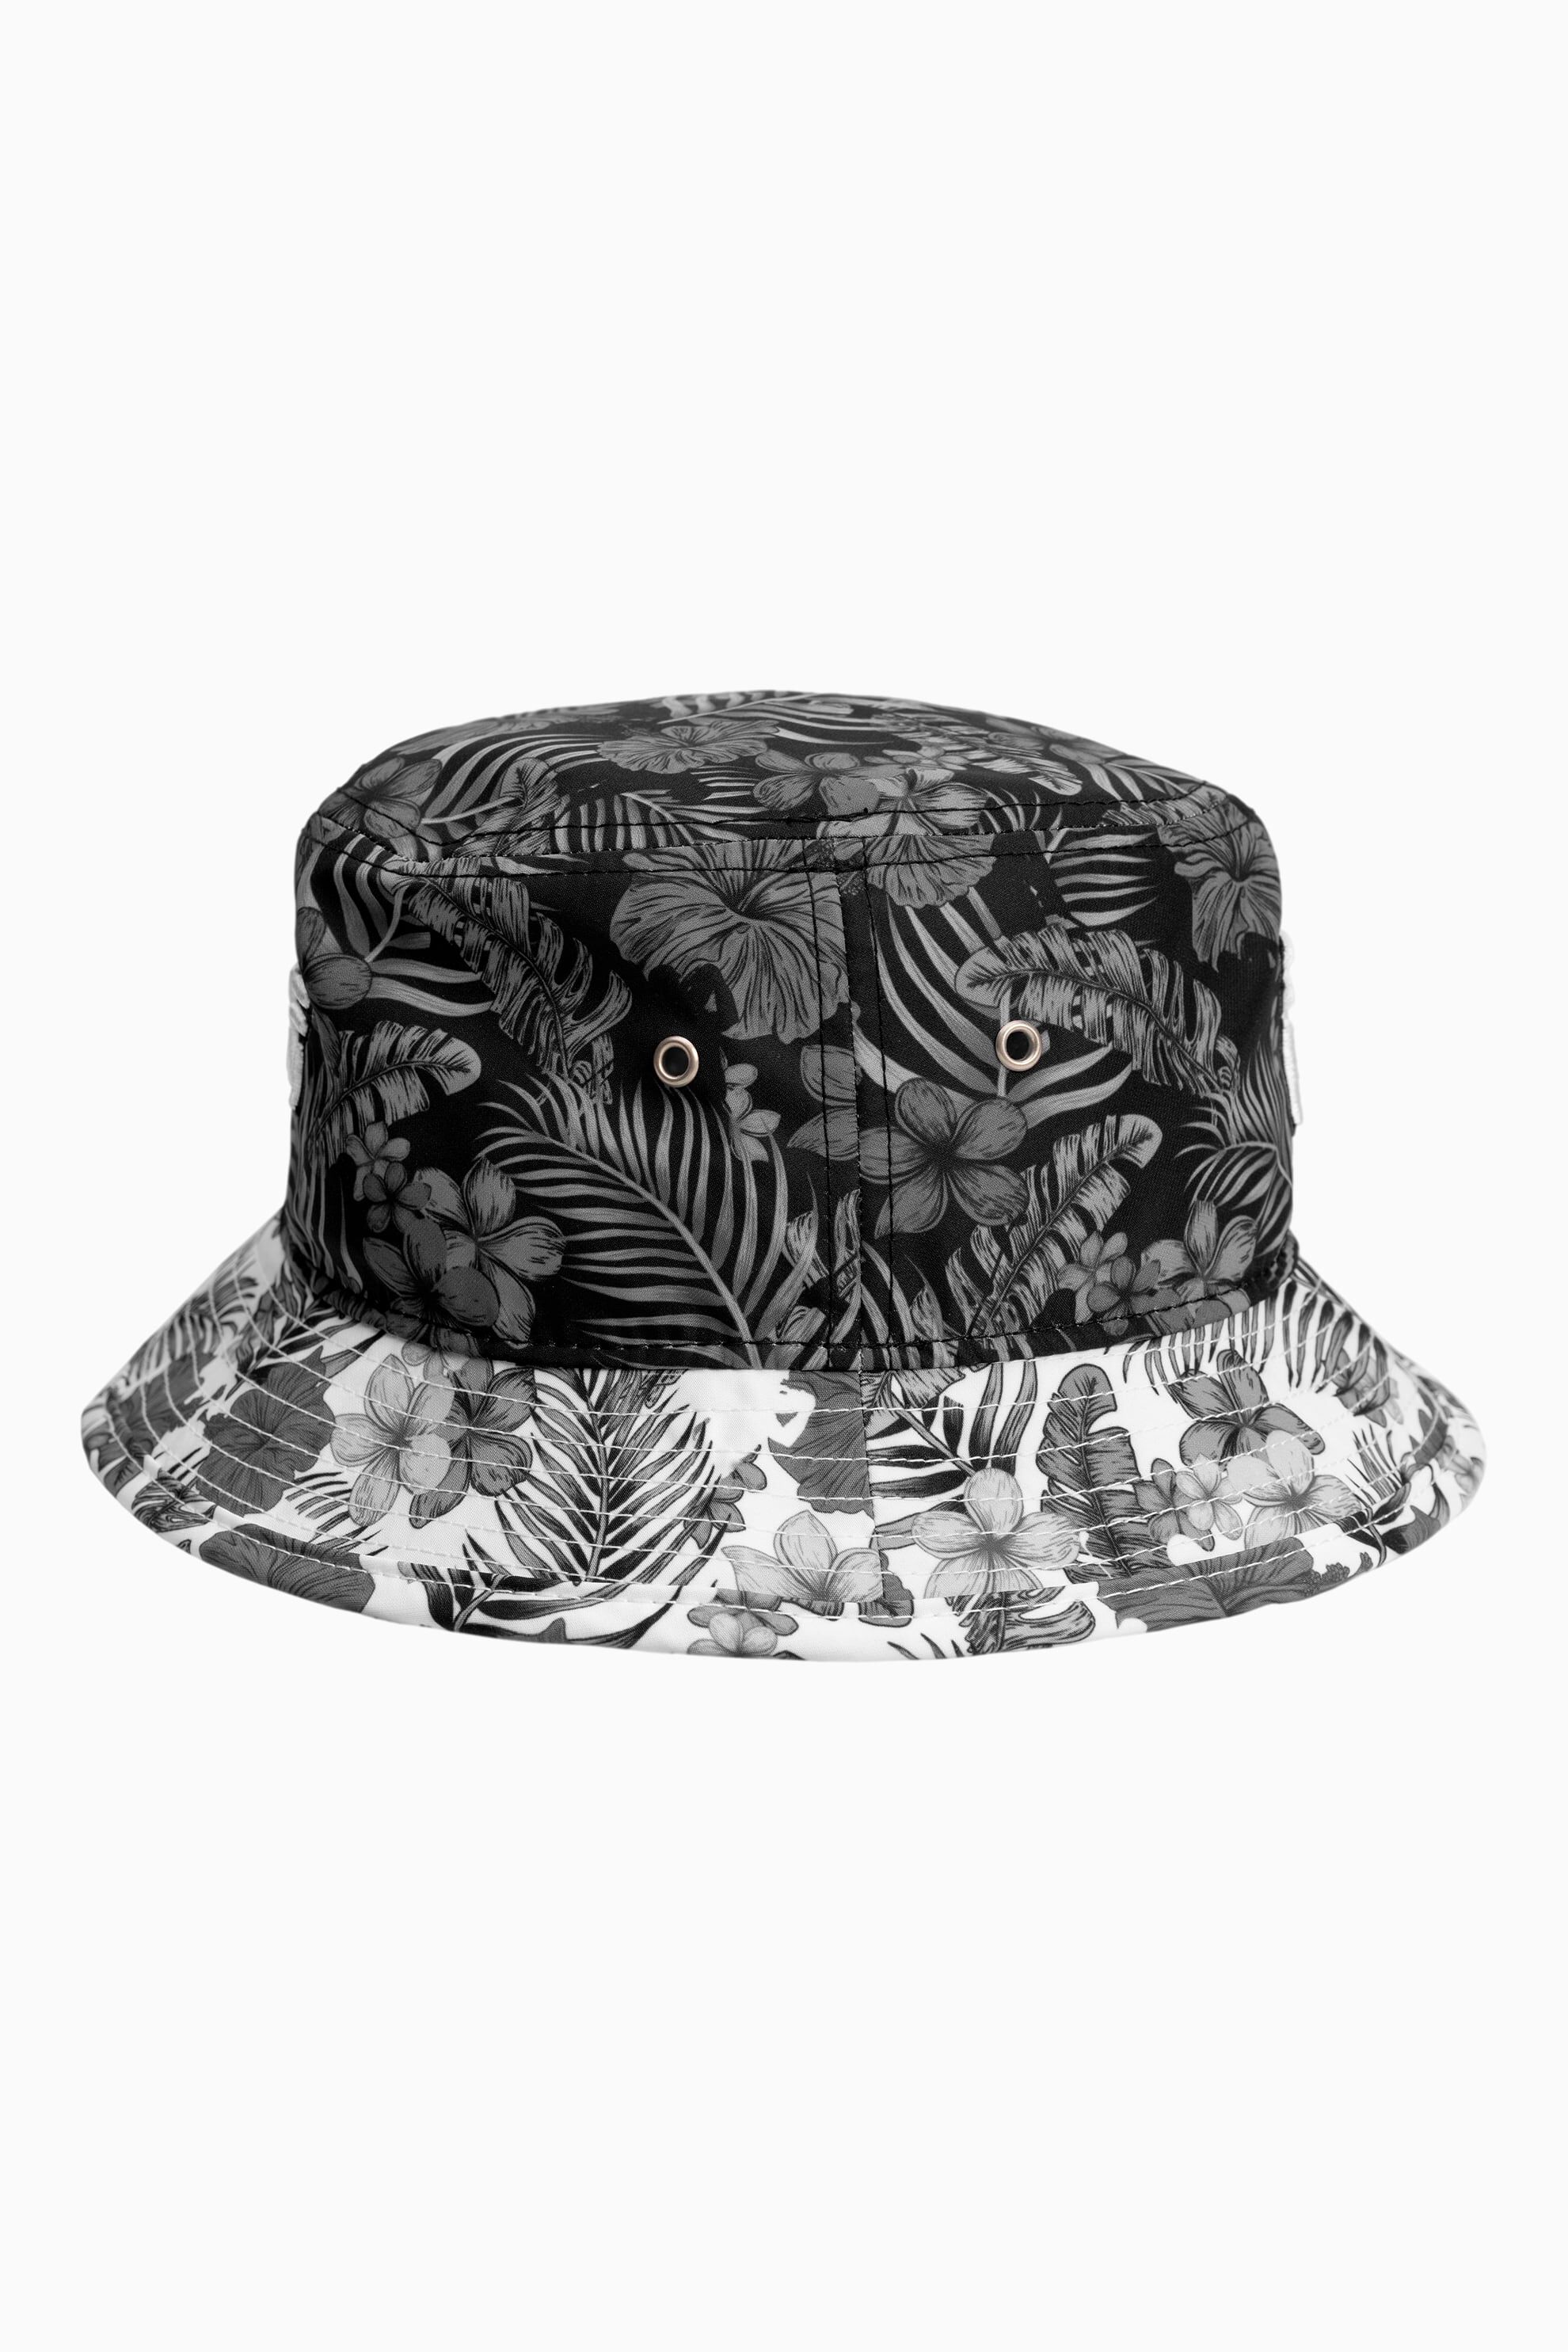 Buy Aloha 2022 Bucket Hat | PXG